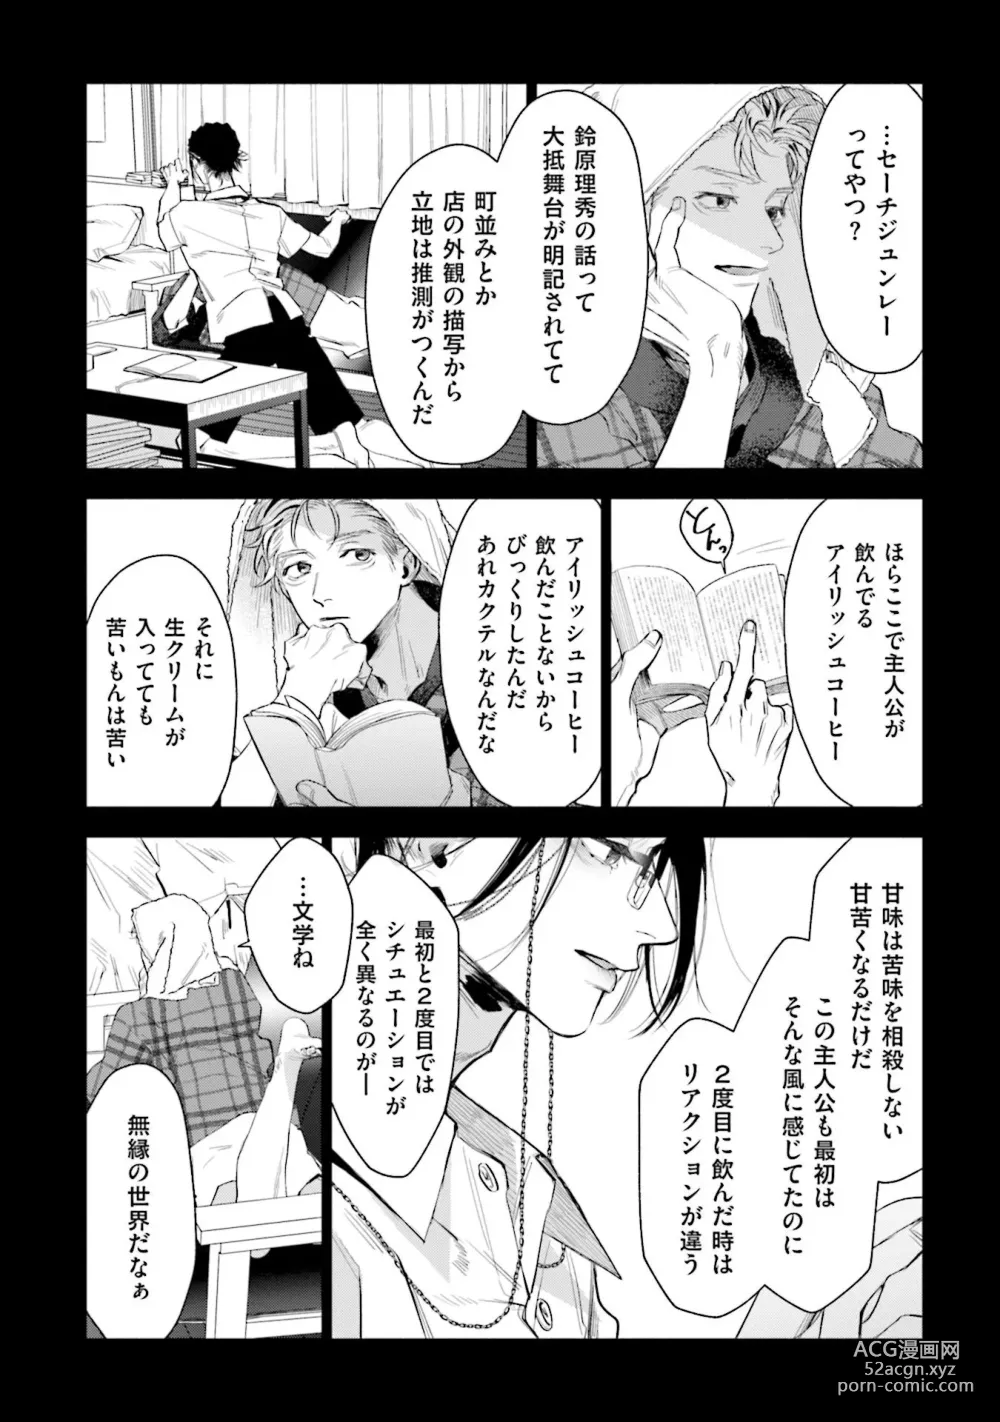 Page 12 of manga Hitoriyogari no Vanilla